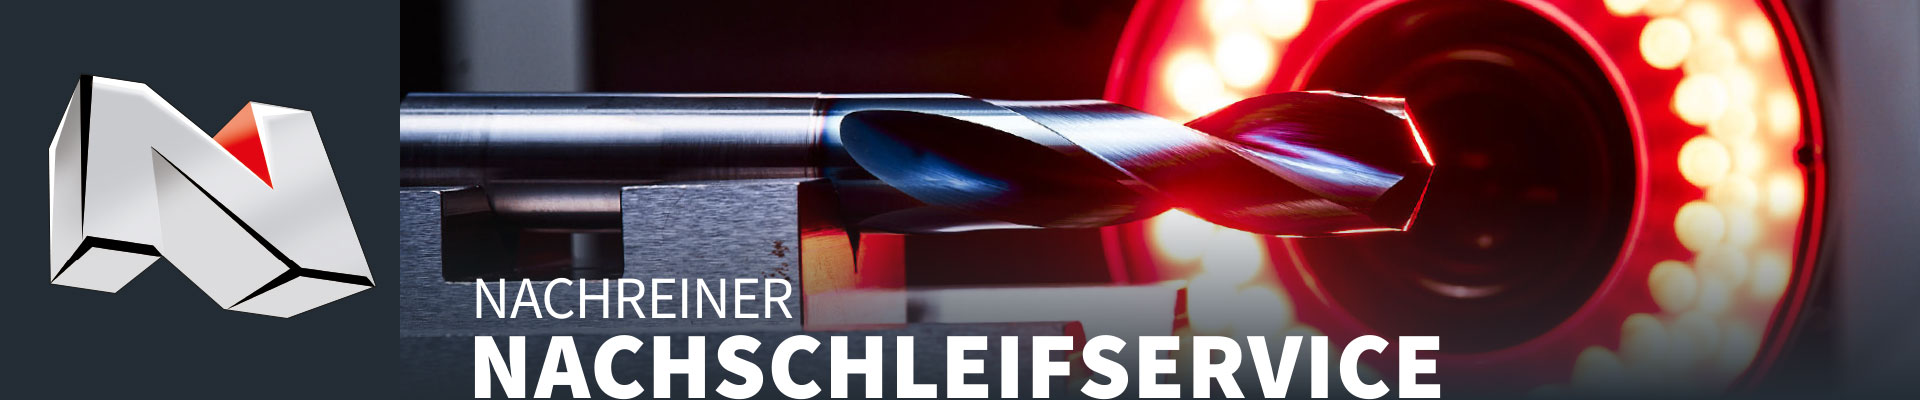 Nachreiner Werkzeuge GmbH Nachschleifservice